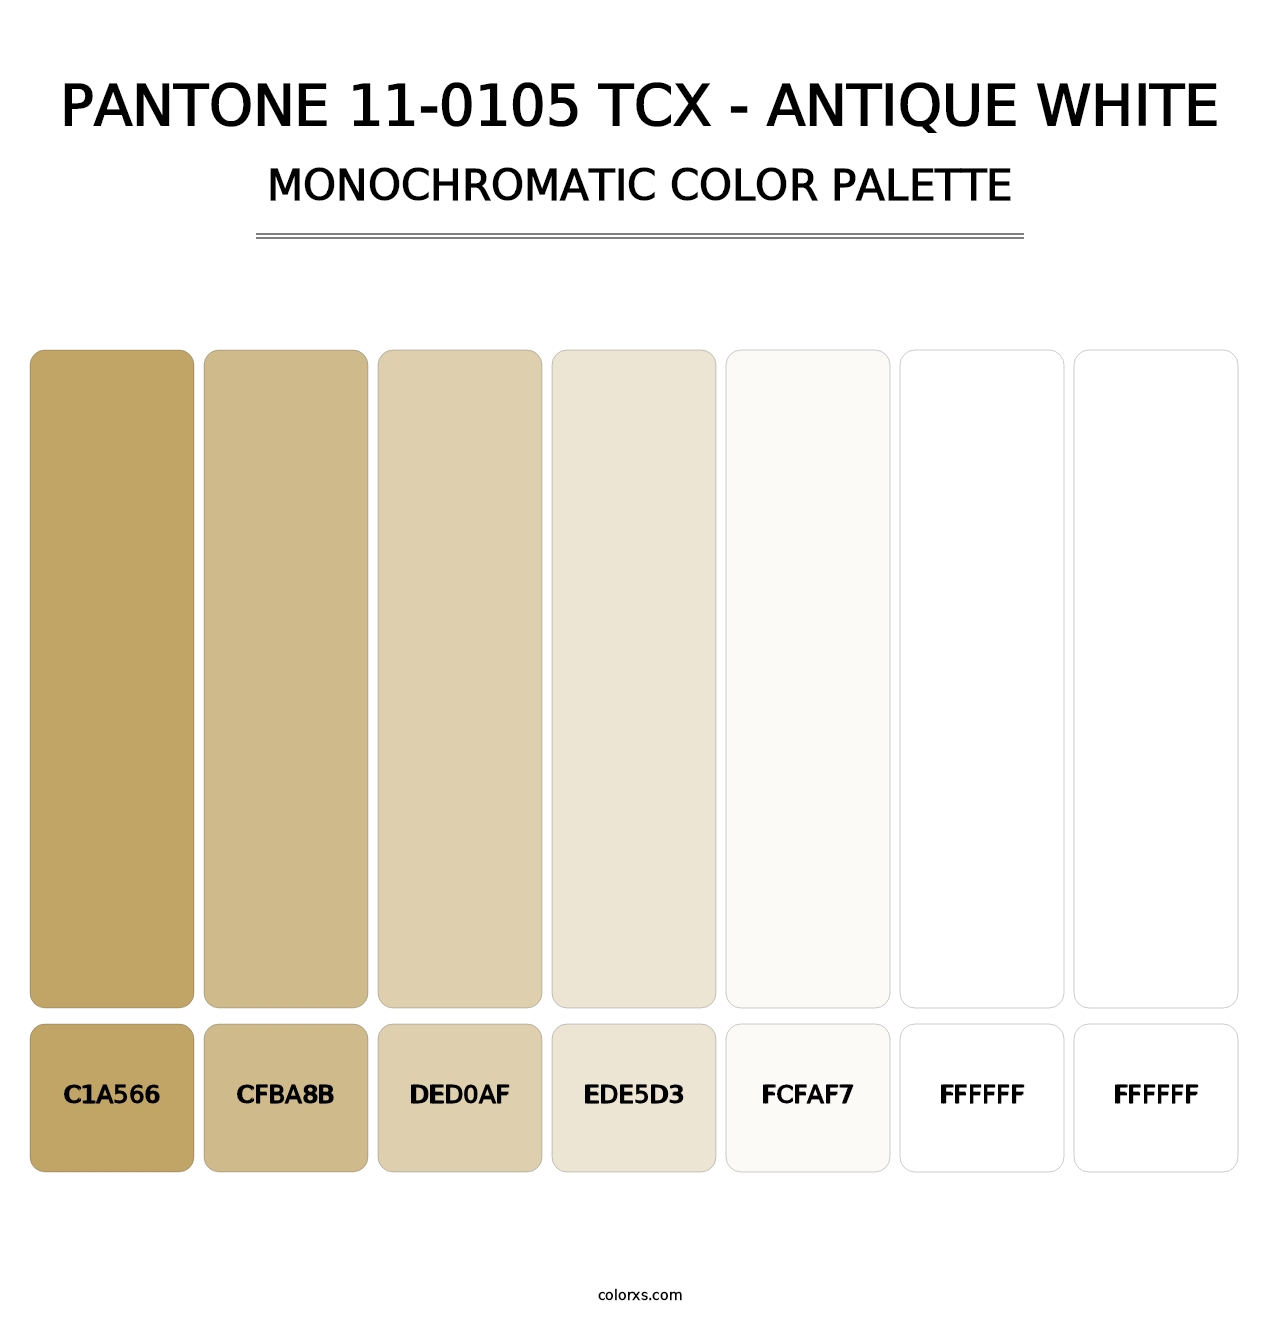 PANTONE 11-0105 TCX - Antique White - Monochromatic Color Palette